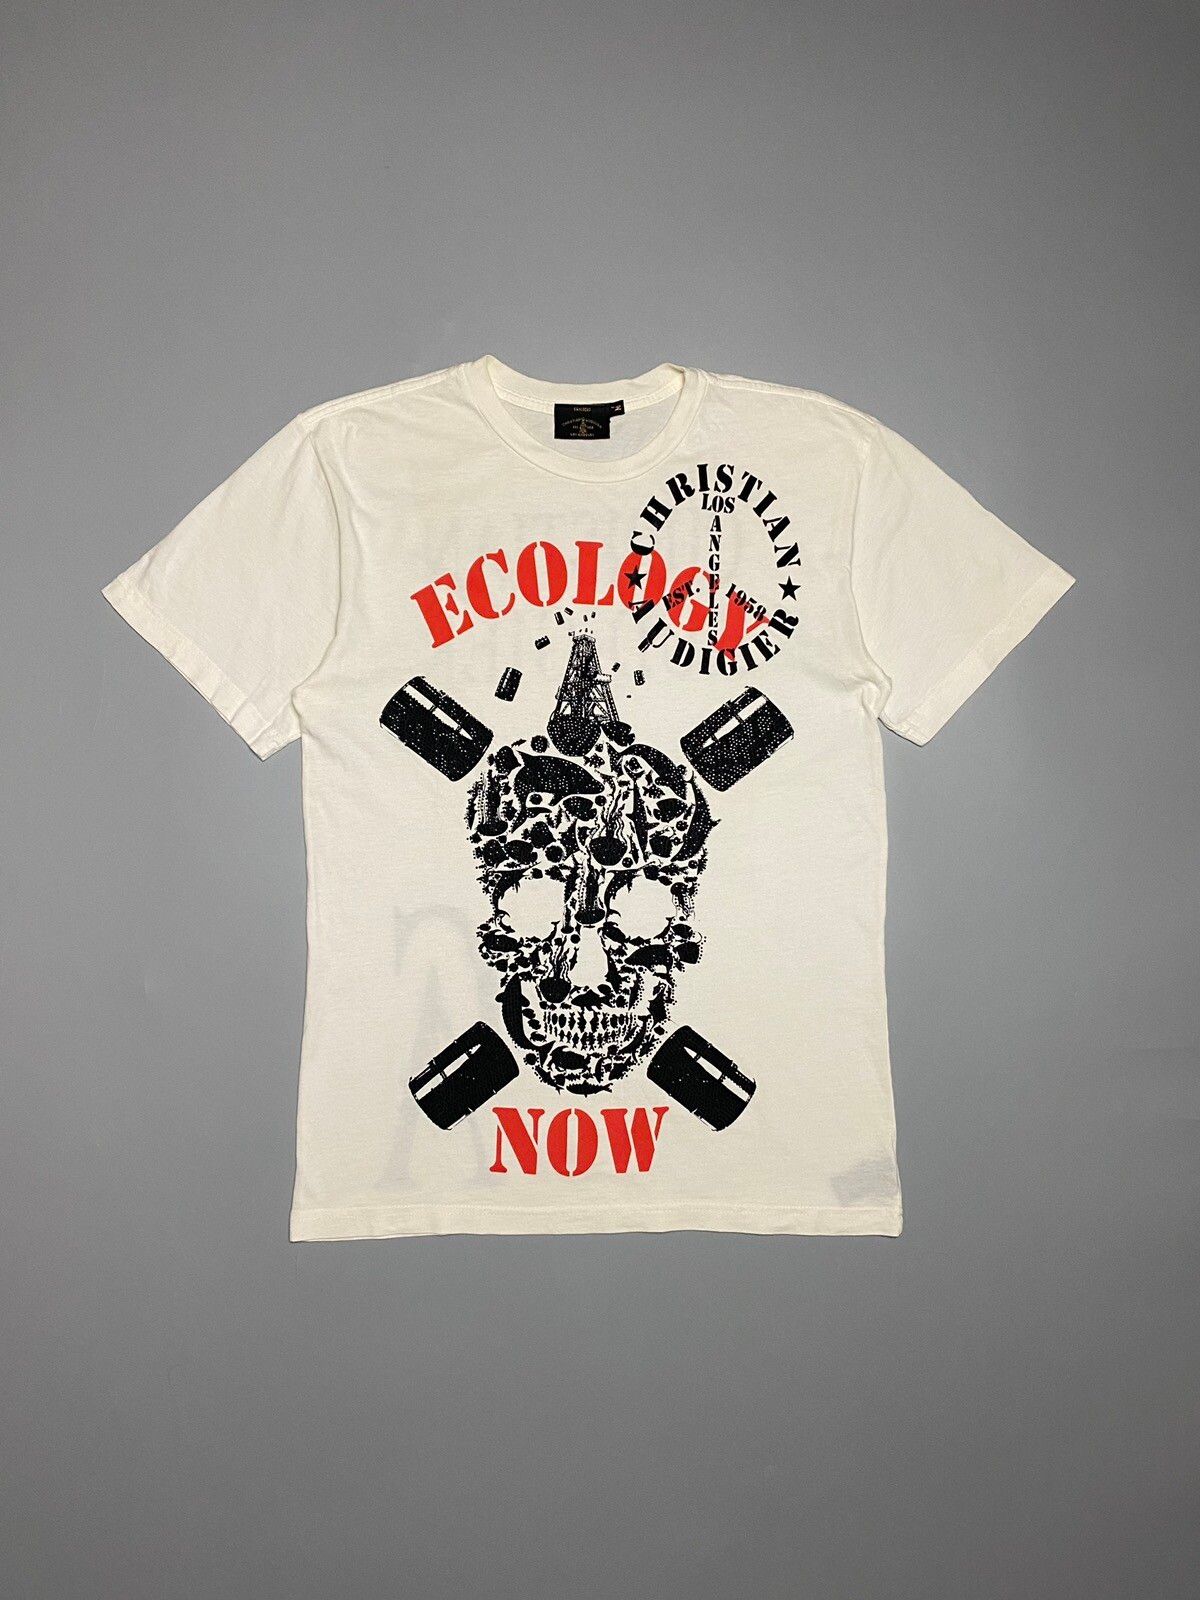 Pre-owned Christian Audigier X Ed Hardy Christian Audigier Skull Ecology Now Vintage T-shirt In White